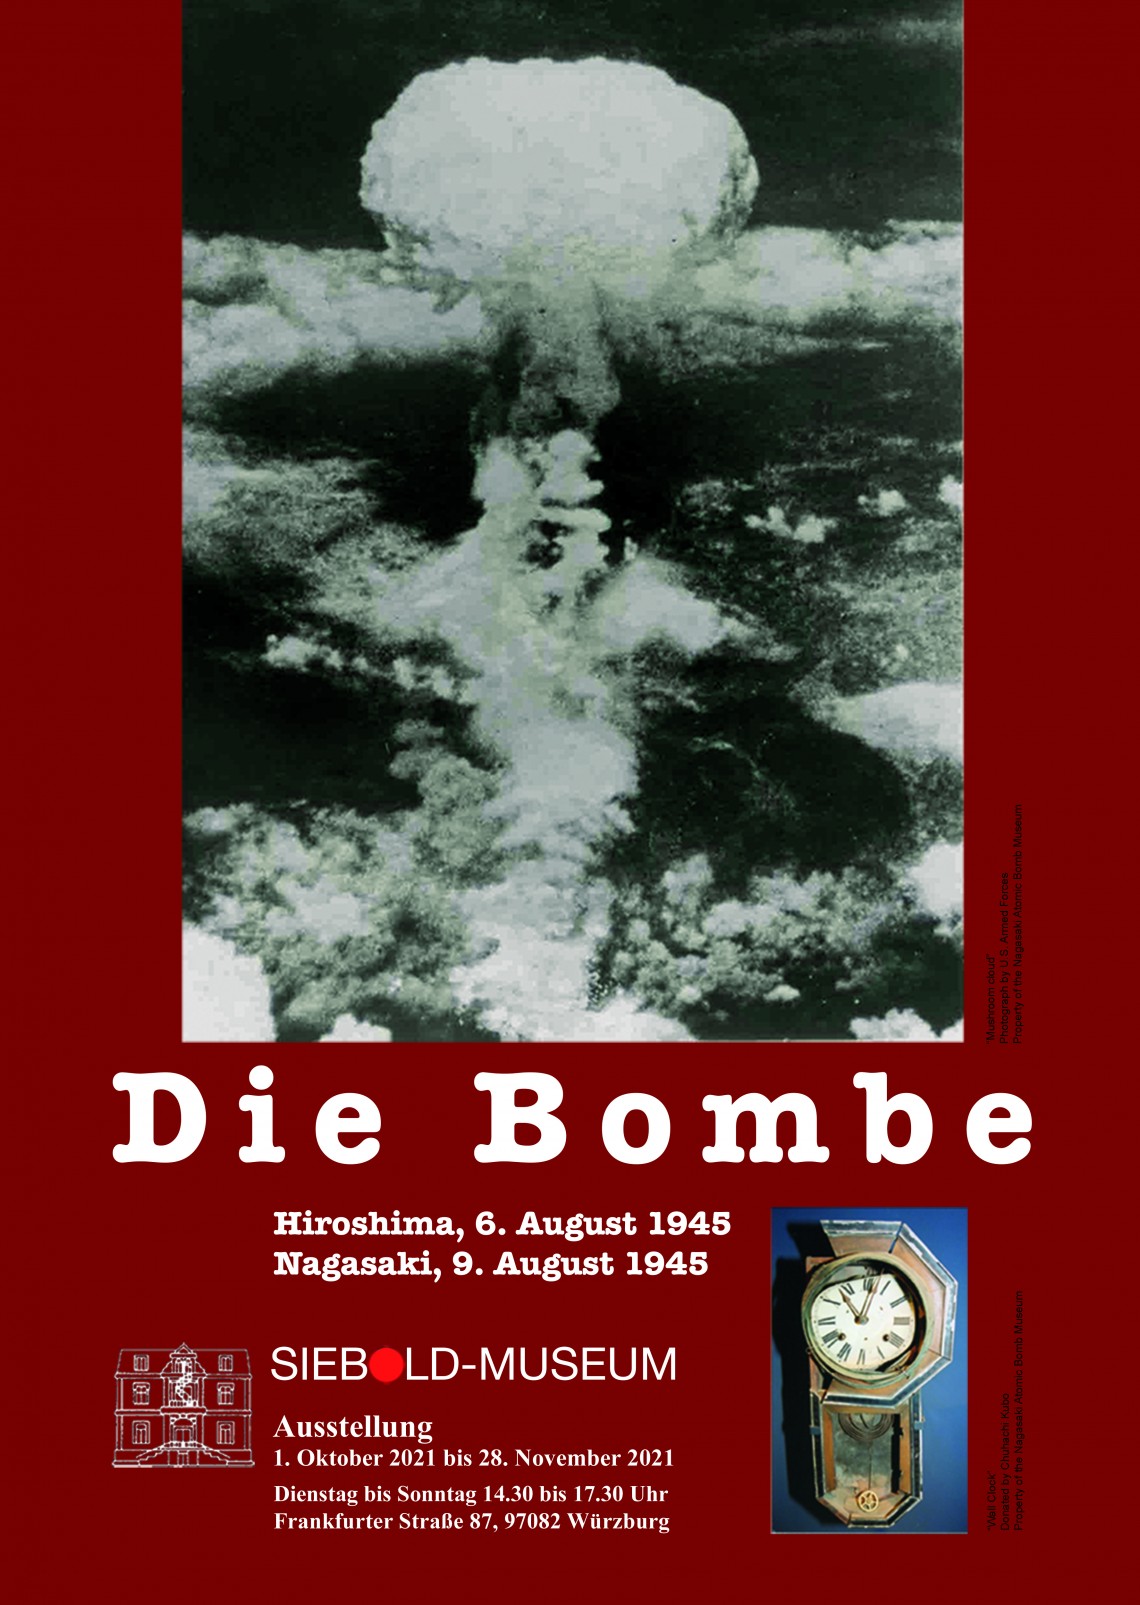 Die Atombombe Ausstellung Siebold-Museum 2021